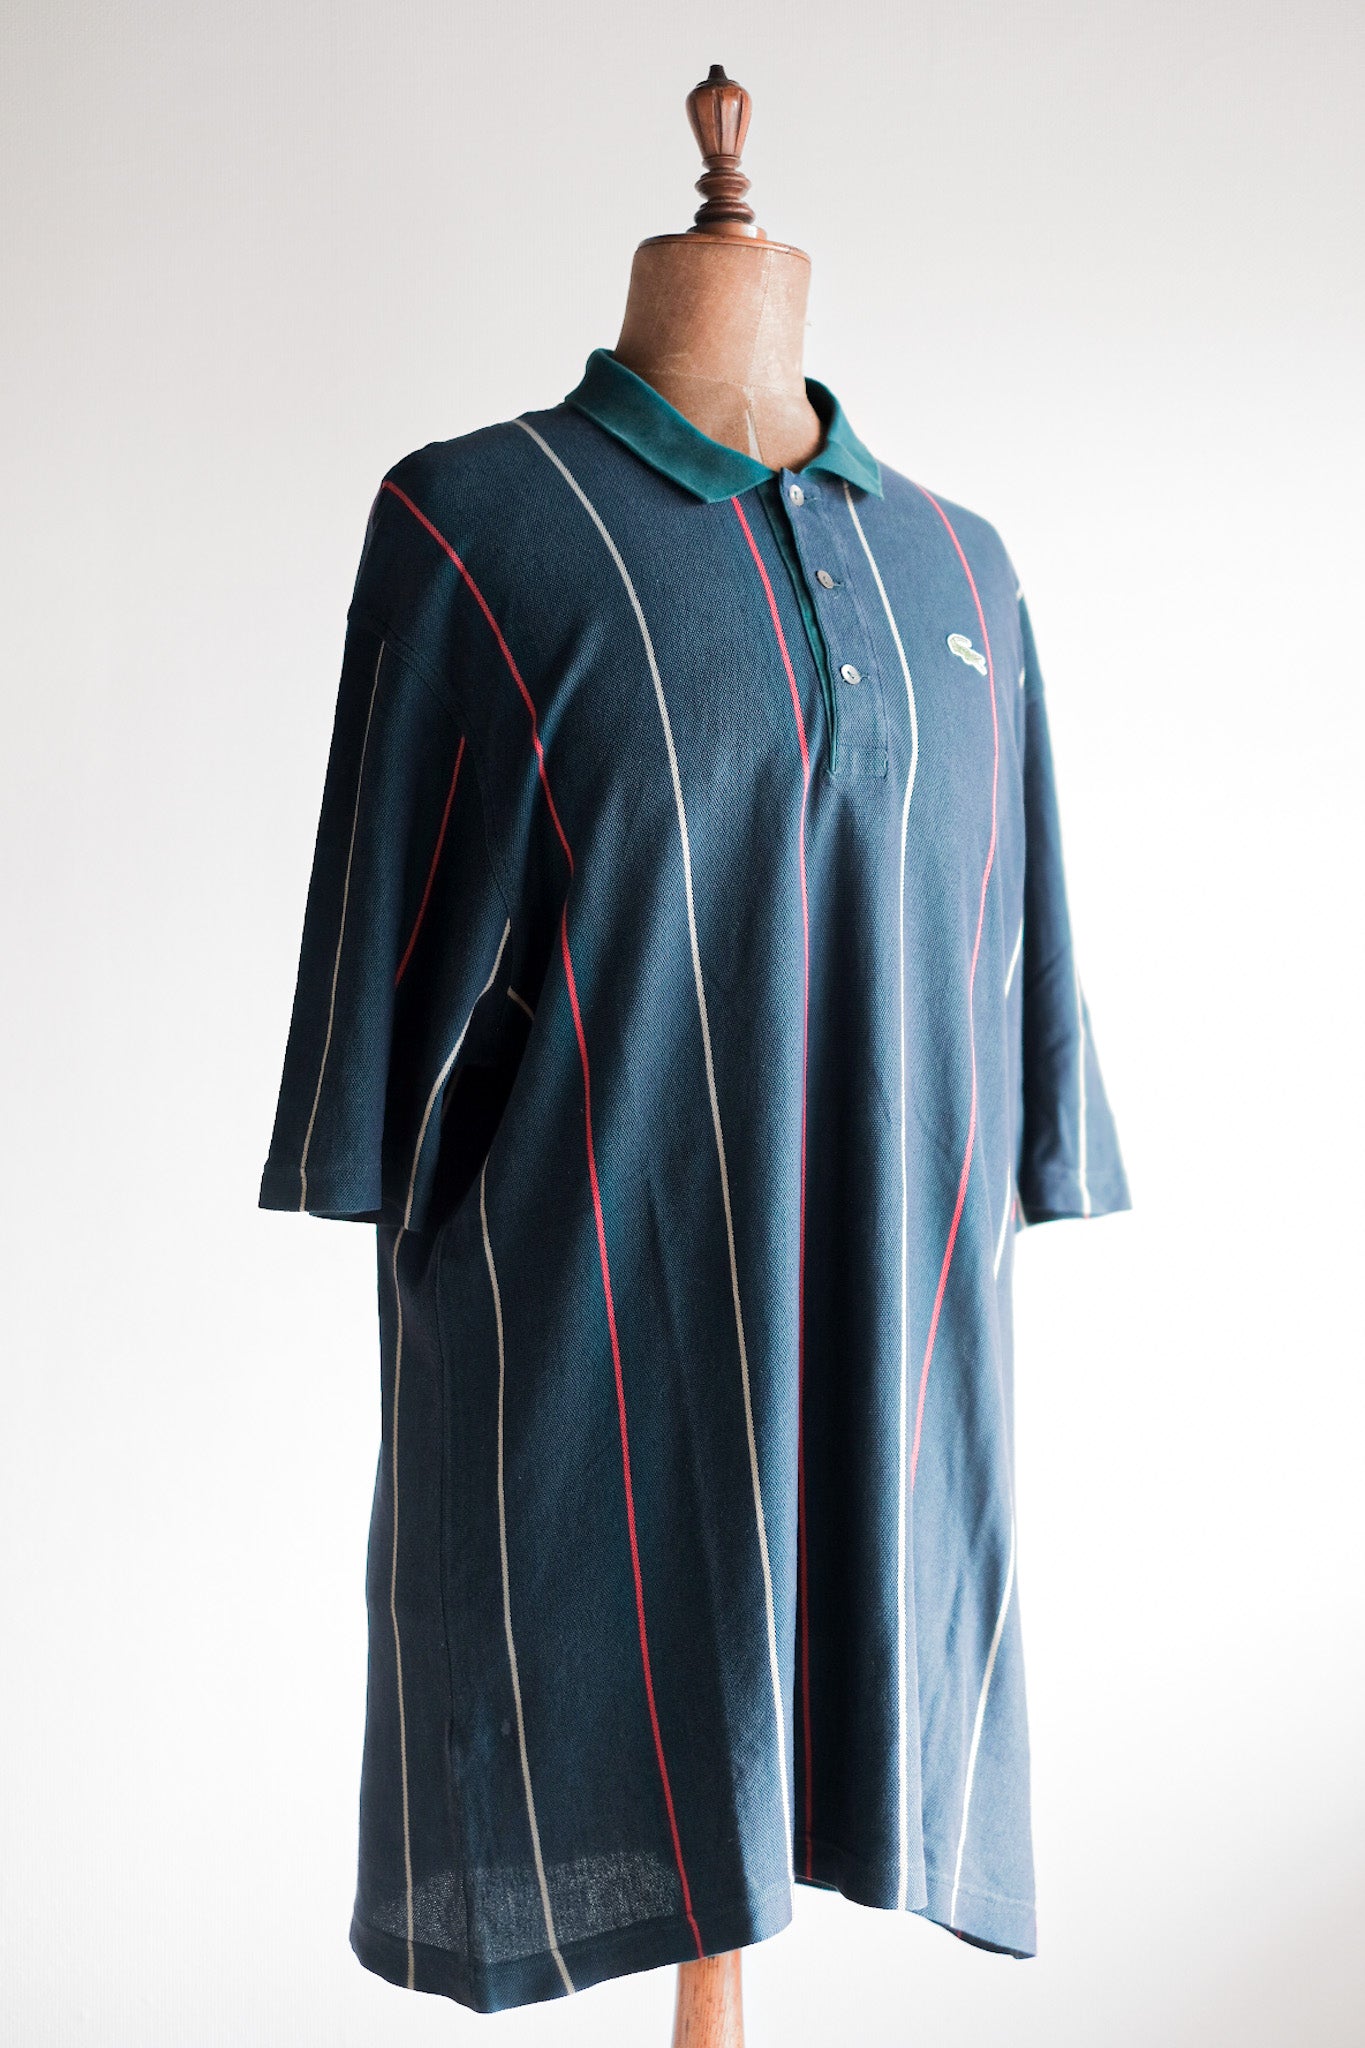 [~ 80's] Chemise Lacoste S/S Polo Shirt Size.8 "Multi Color"